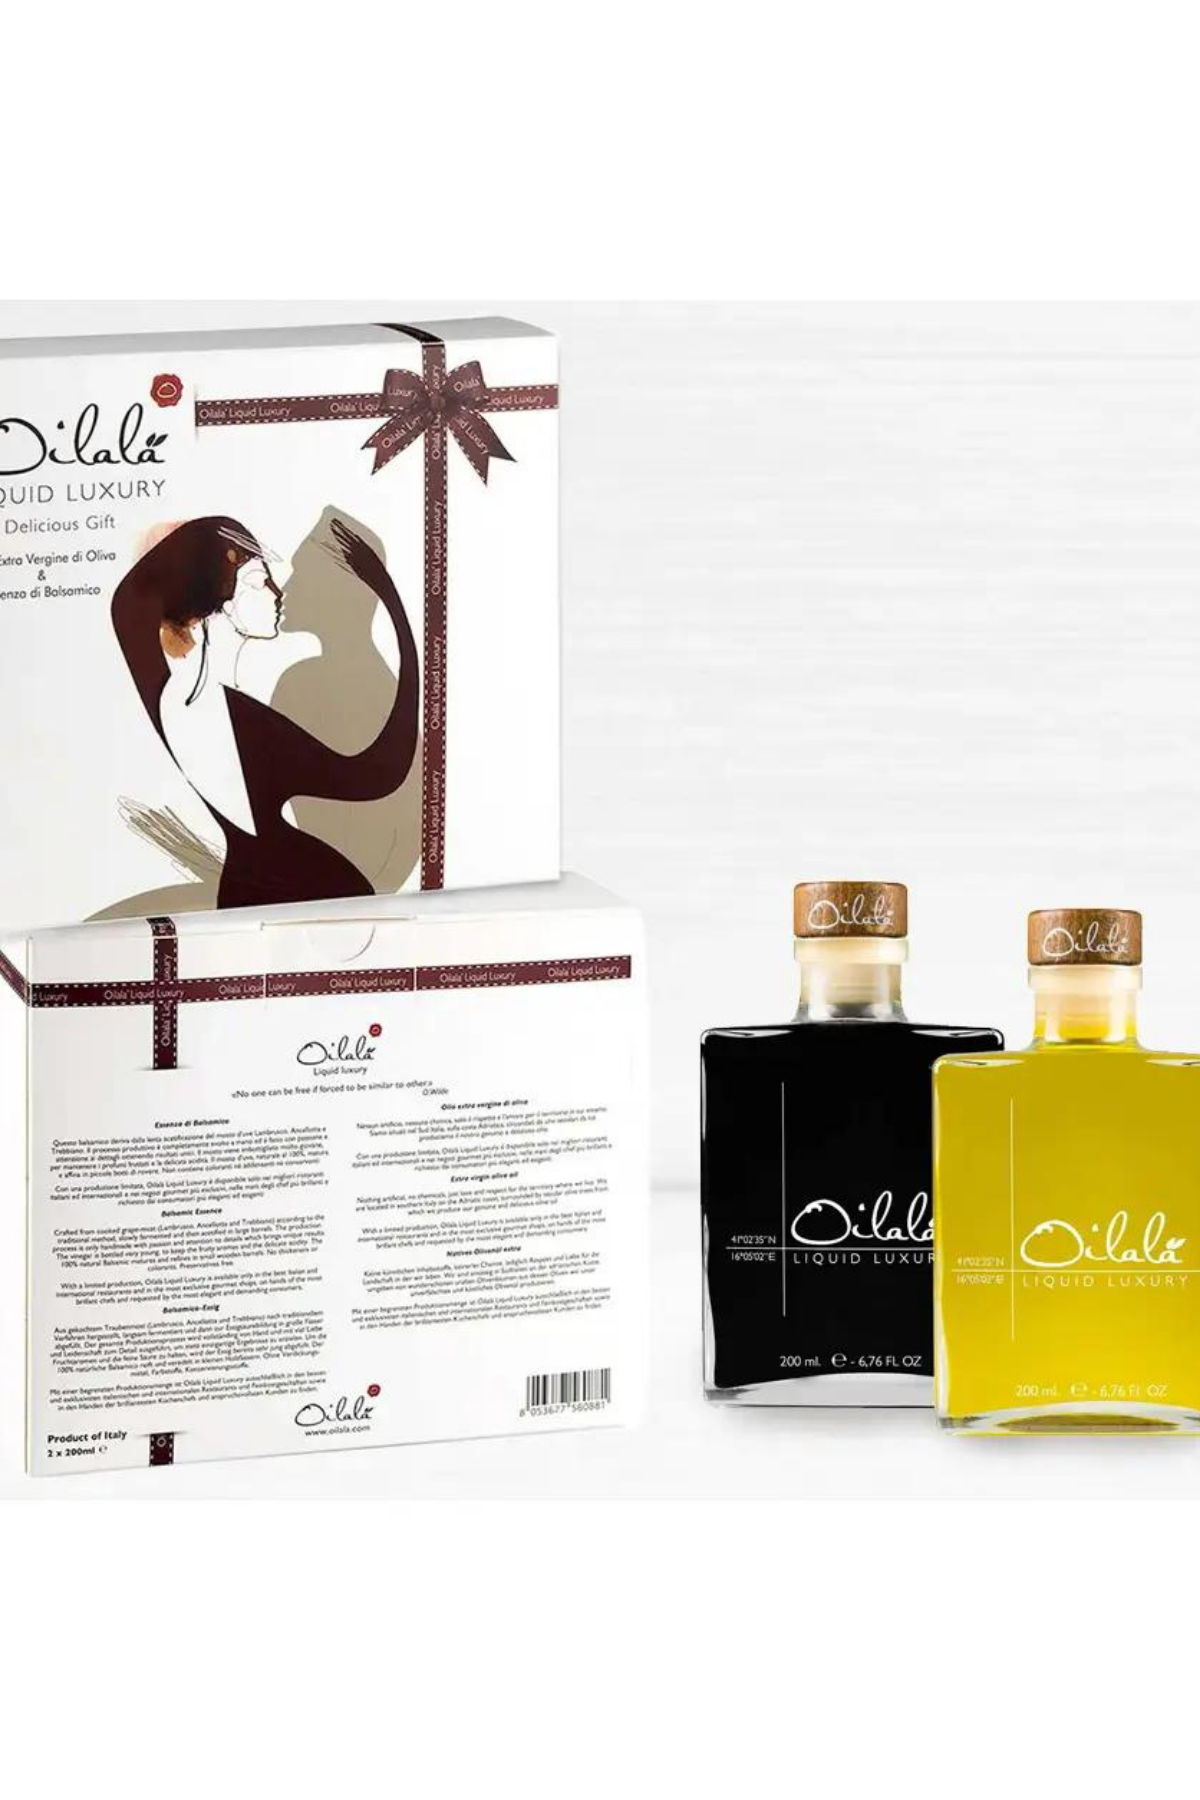 Italian Oilala EV Olive Oil + Balsamic Vinegar Gift Set